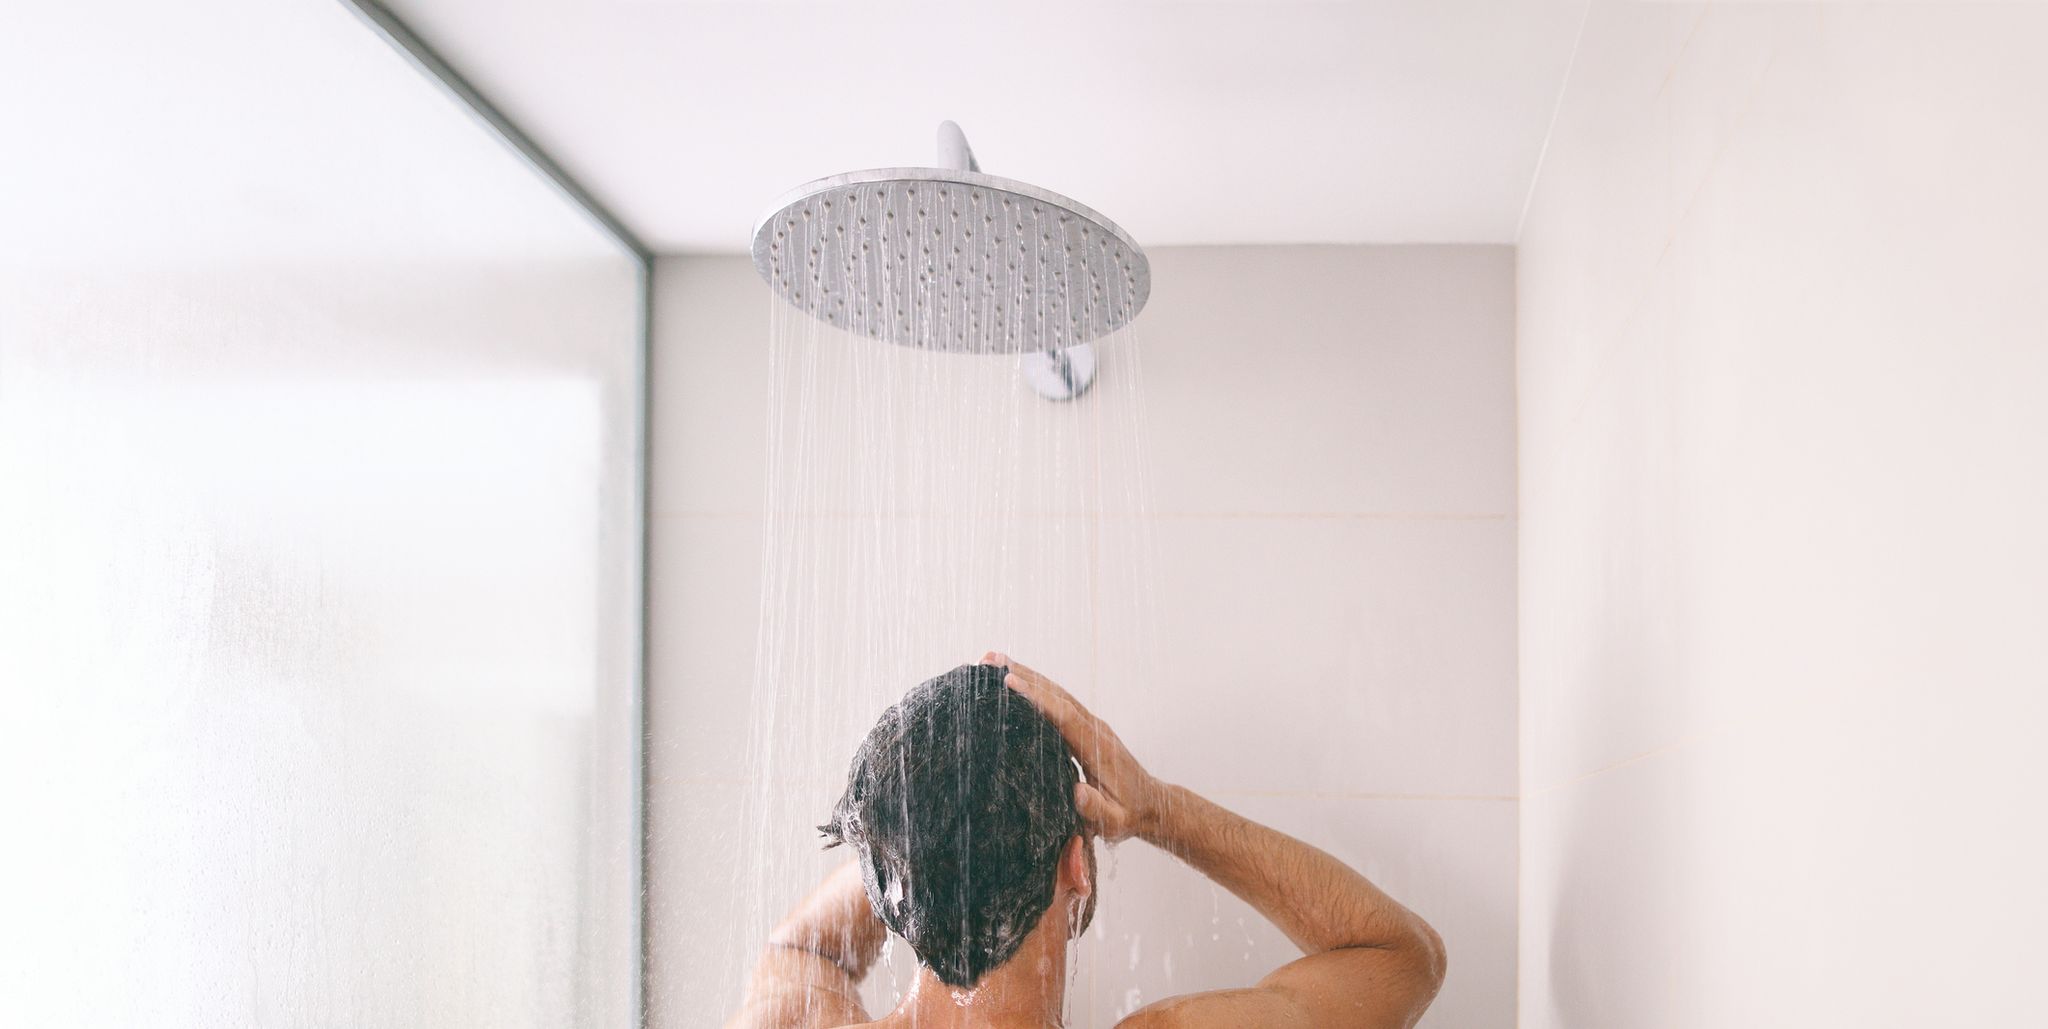 La spugna da doccia è l'oggetto più sporco che avete nel bagno